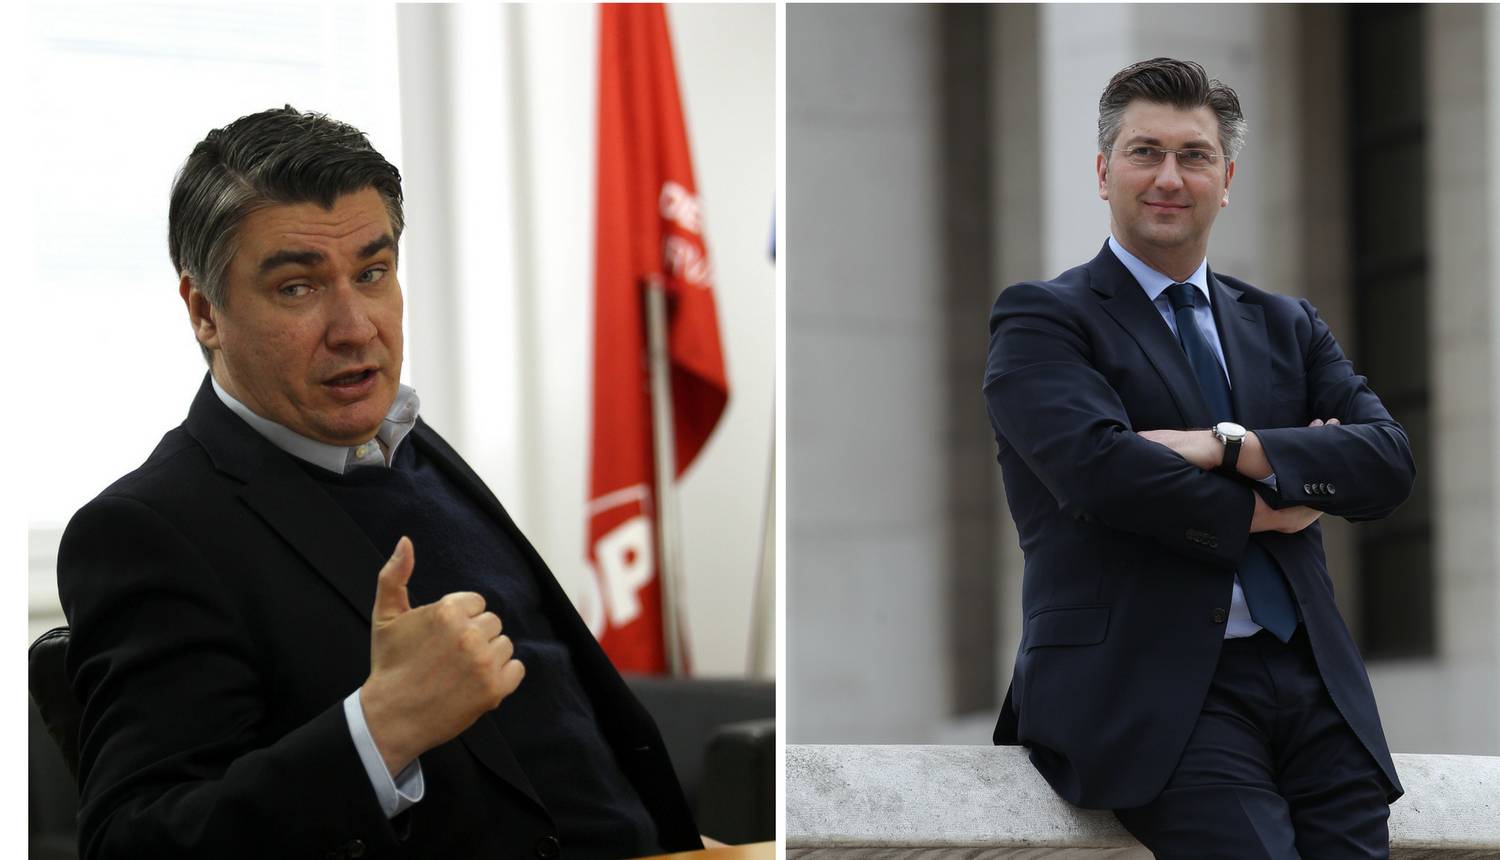 Velika TV debata: Danas će se sučeliti Milanović i Plenković